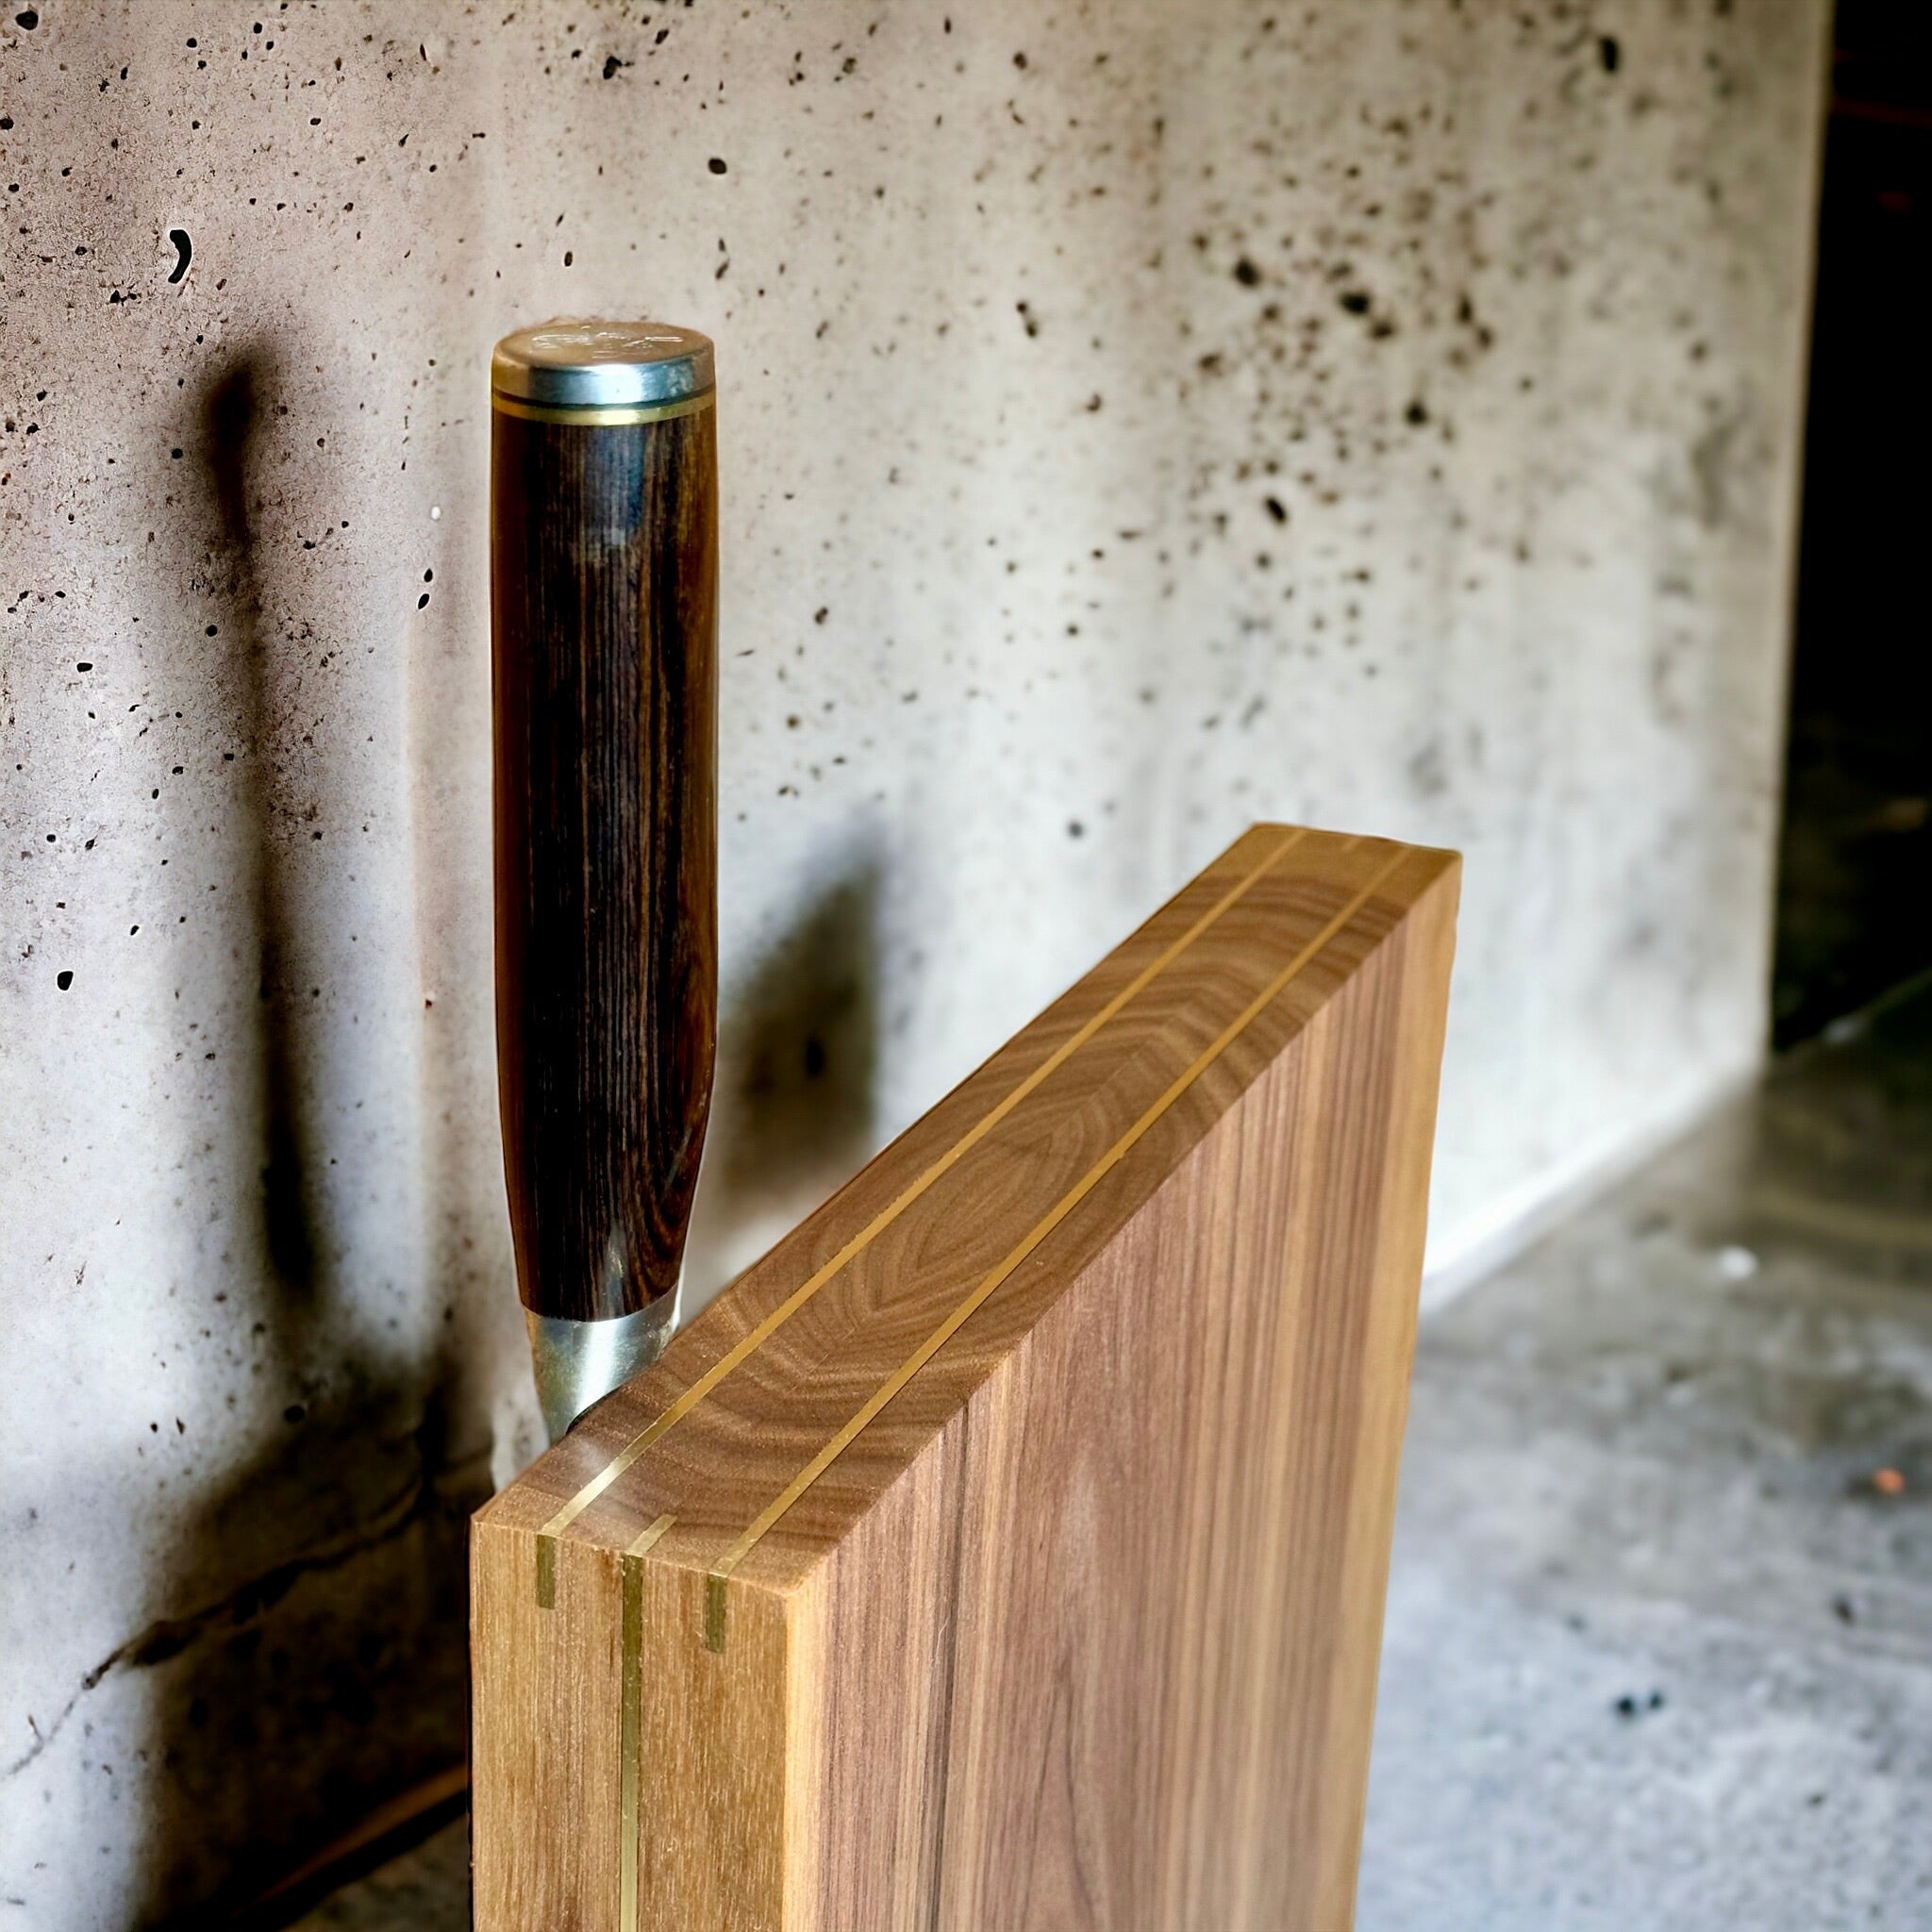 Rune-Jakobsen Woodworks 'The Monolith' magnetisk knivblok_3 by Rune-Jakobsen Design